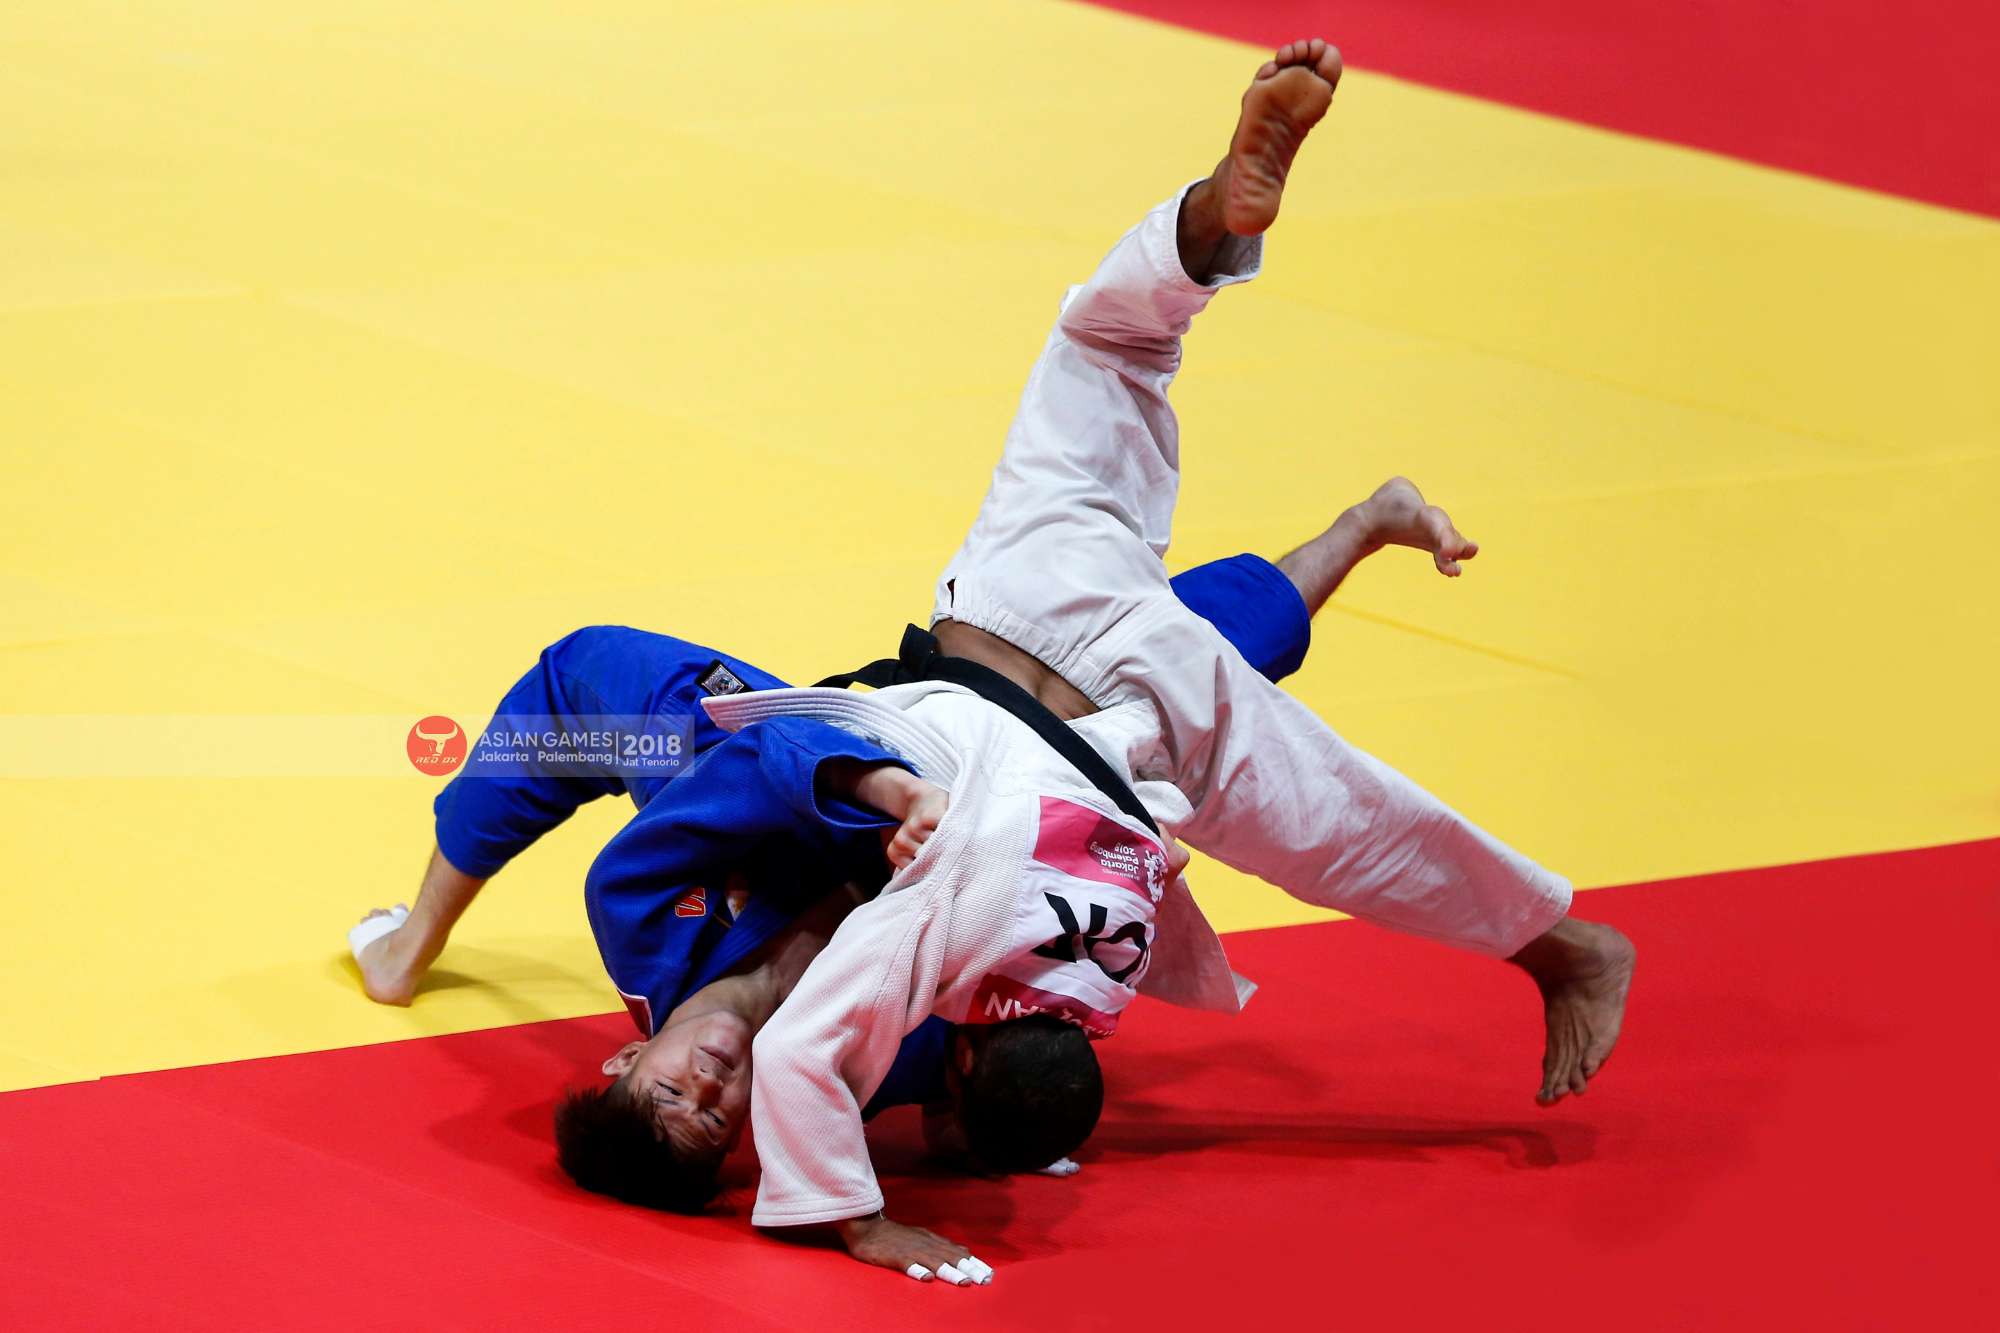 Asian Games 2018 Judo – Keisei Nakano